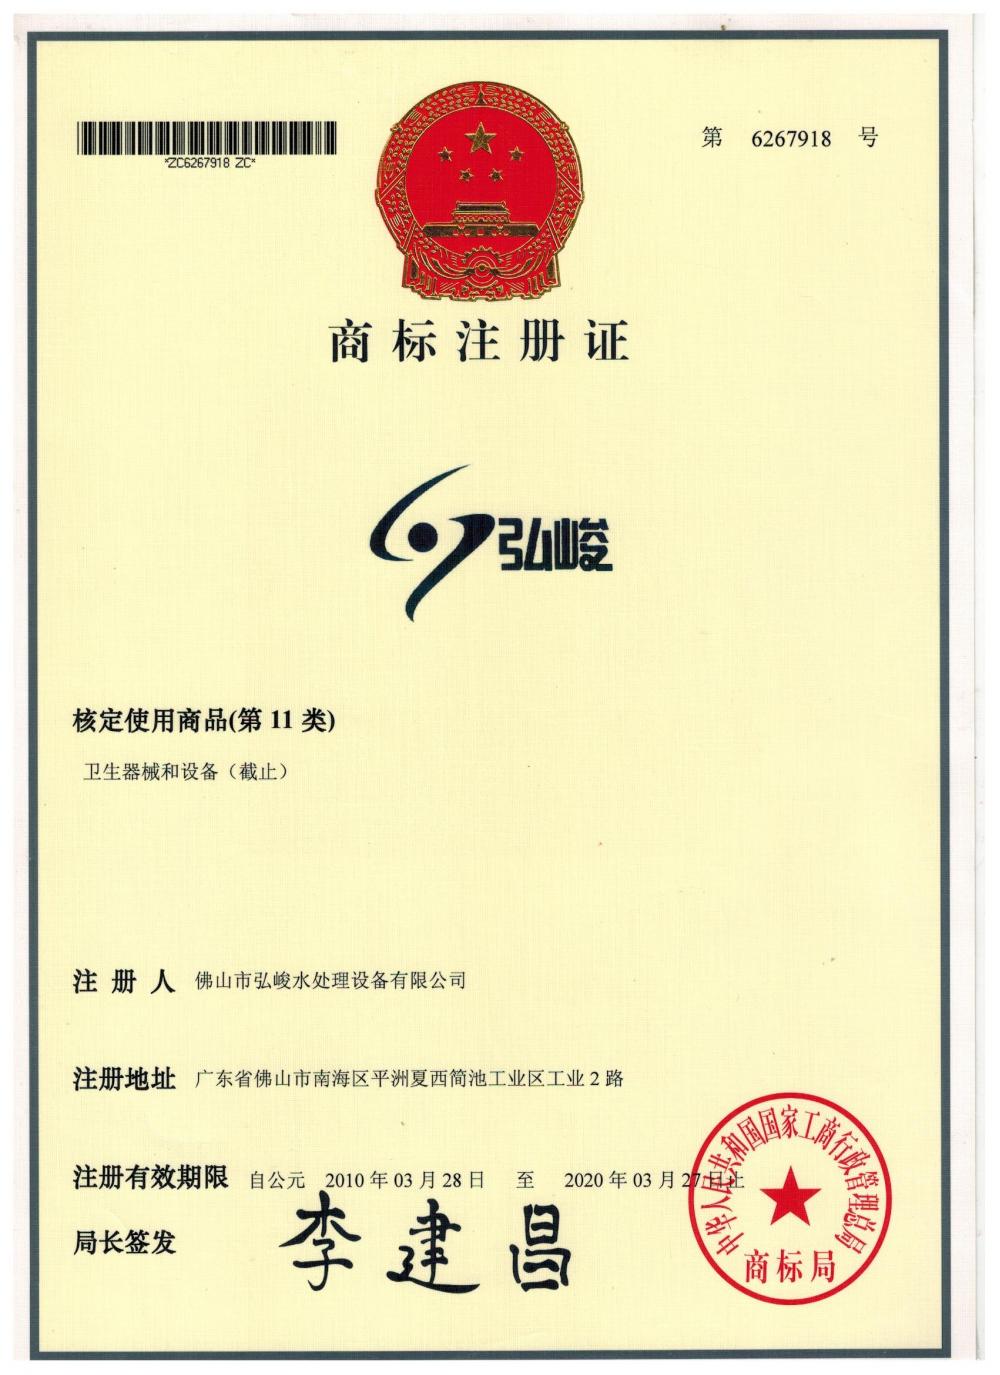 Hongjun Trademark Registration Certificate